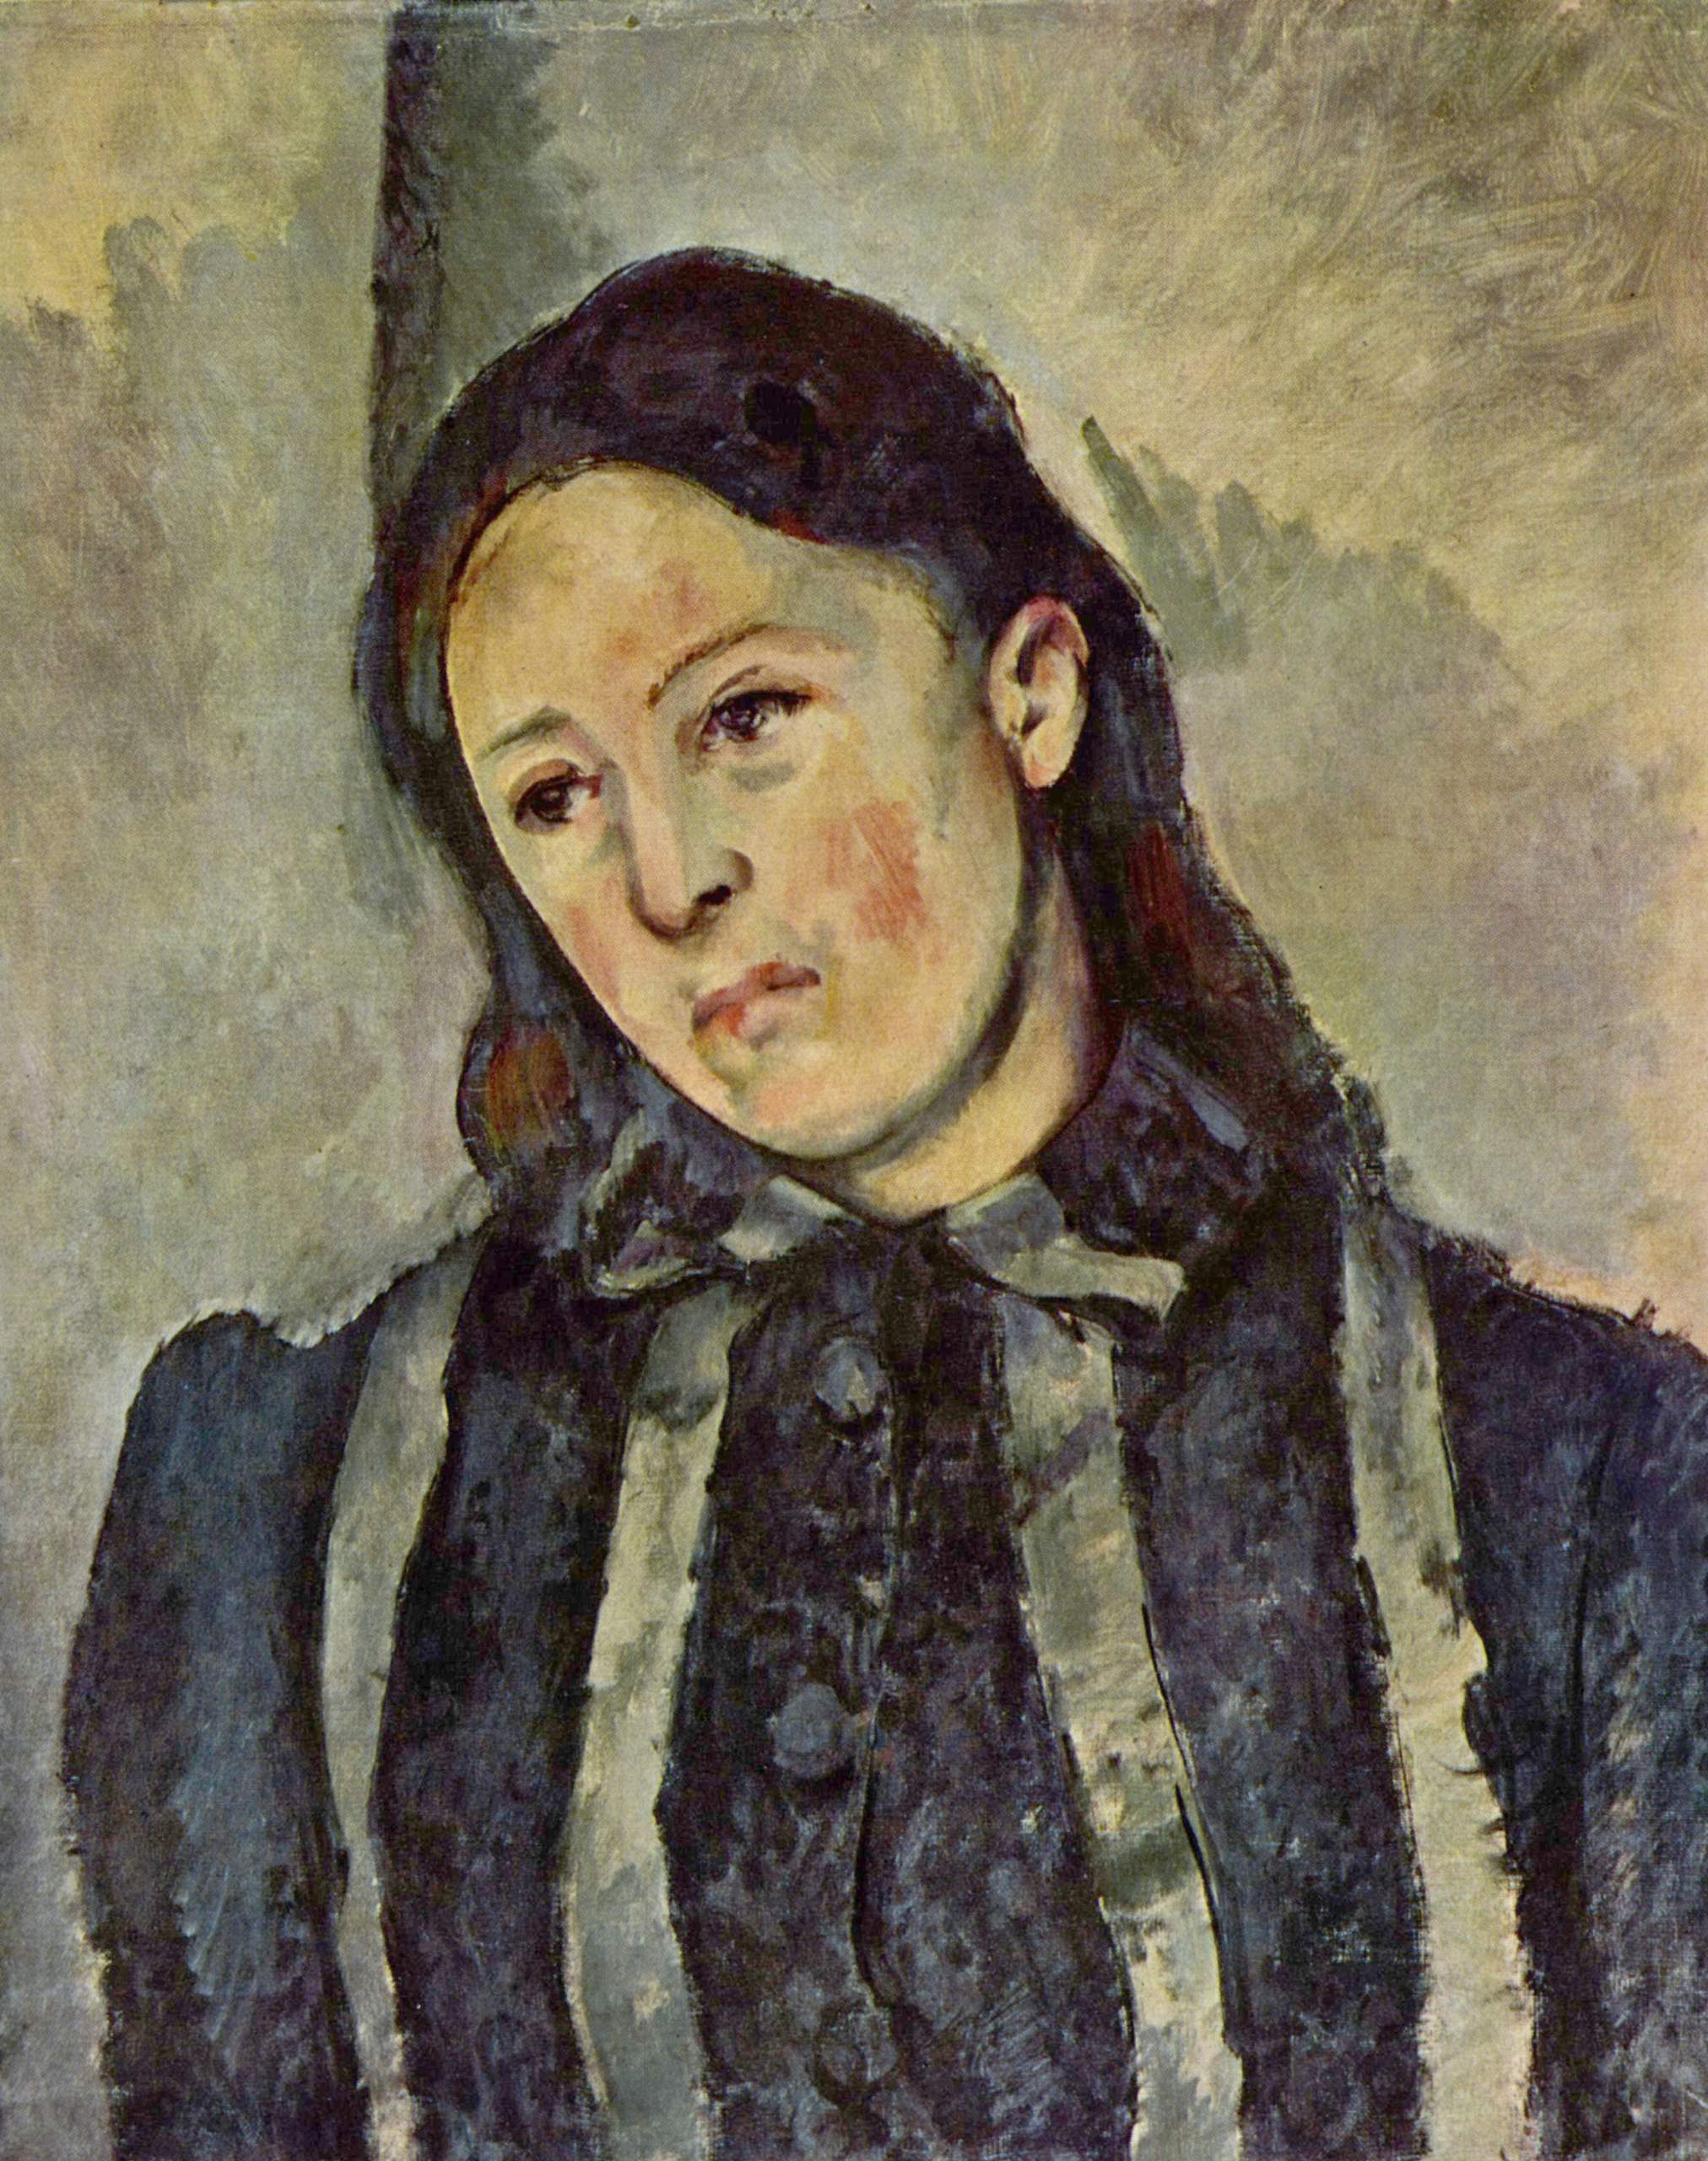 Porträt von Madame Cézanne mit offenem Haar by Paul Cézanne - 1882-1887 - 62 × 51 cm Private Sammlung